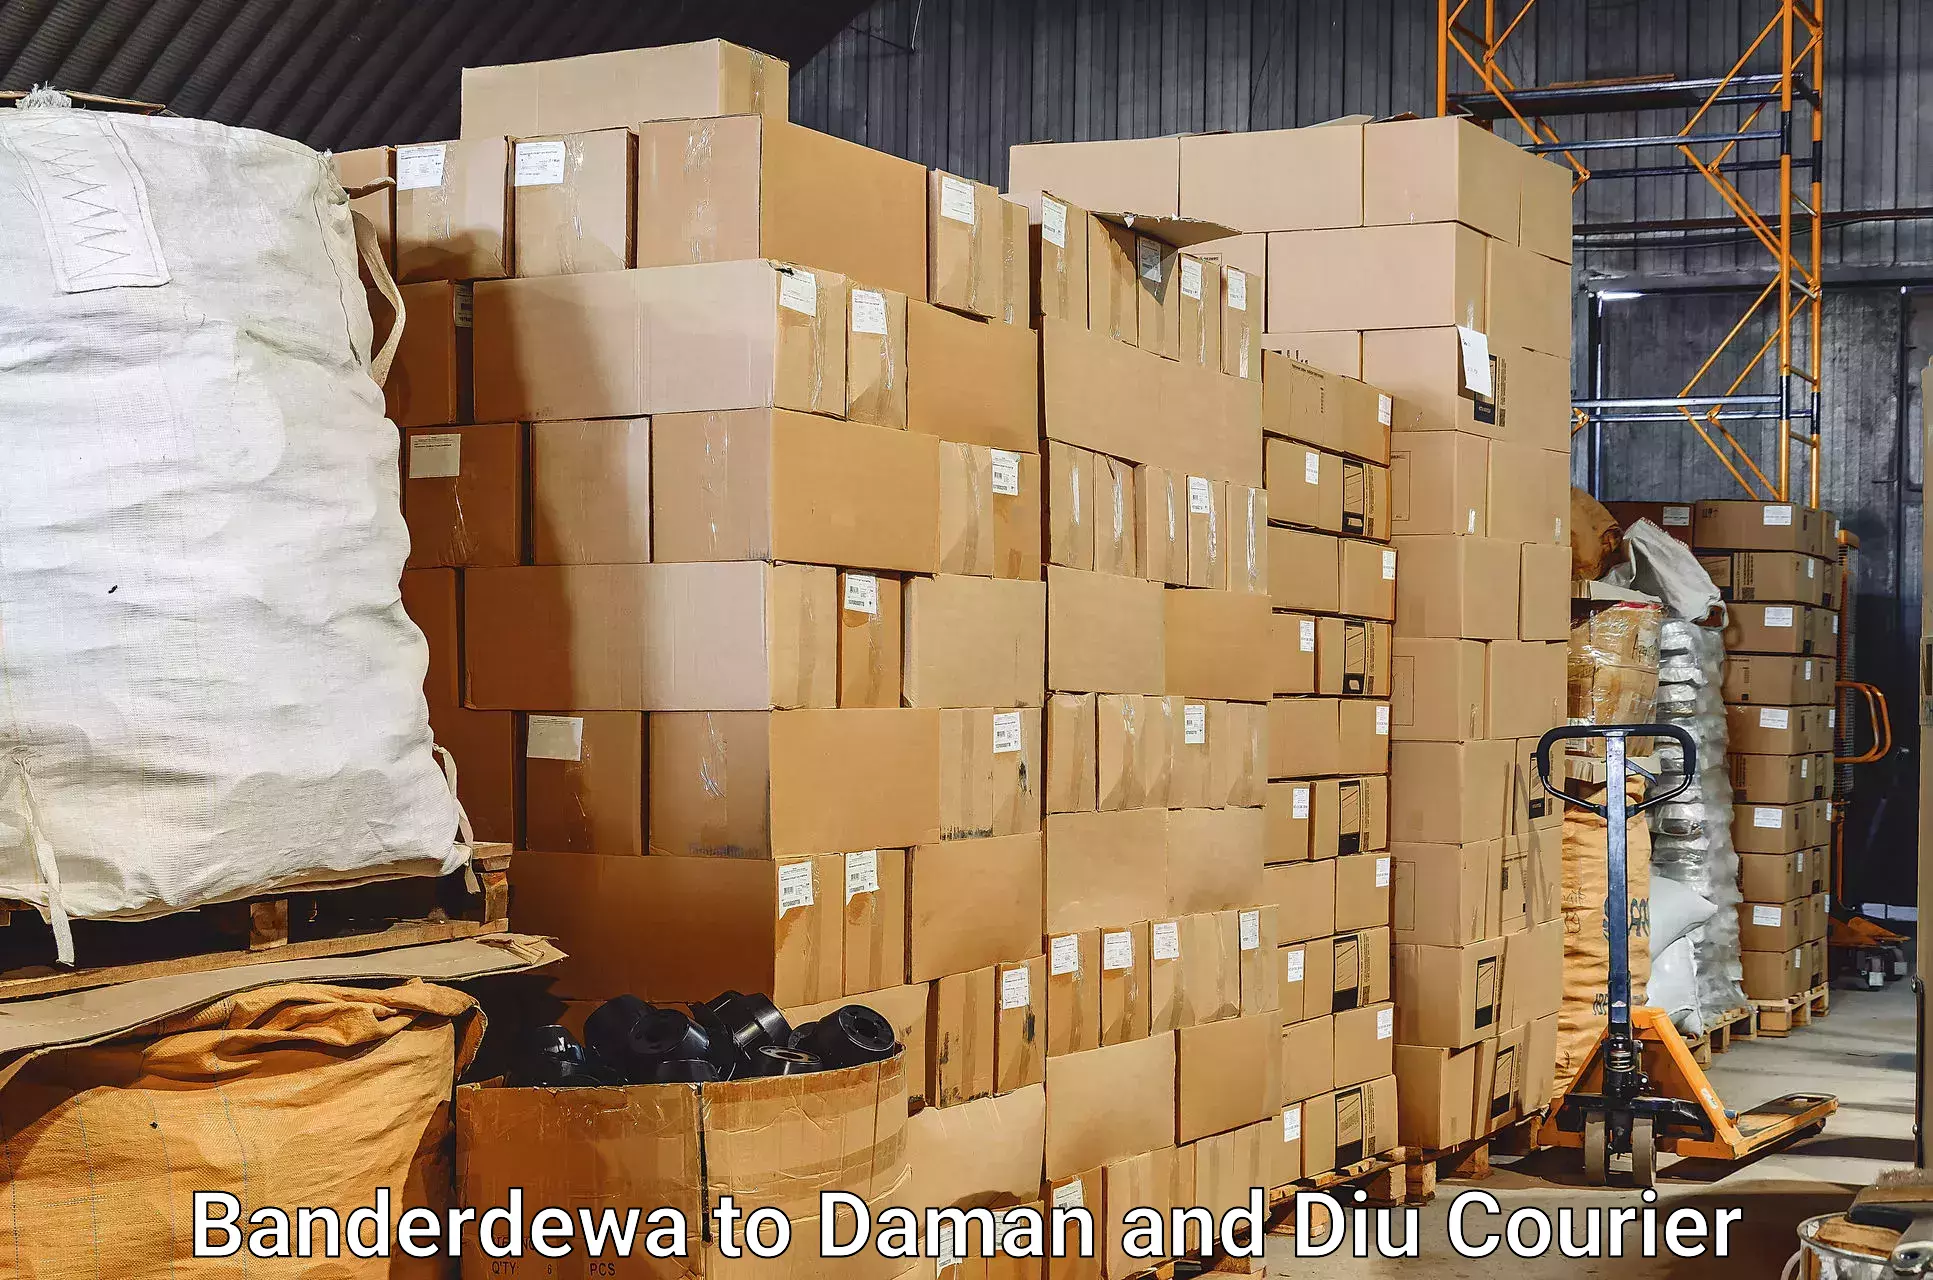 Baggage transport professionals Banderdewa to Daman and Diu